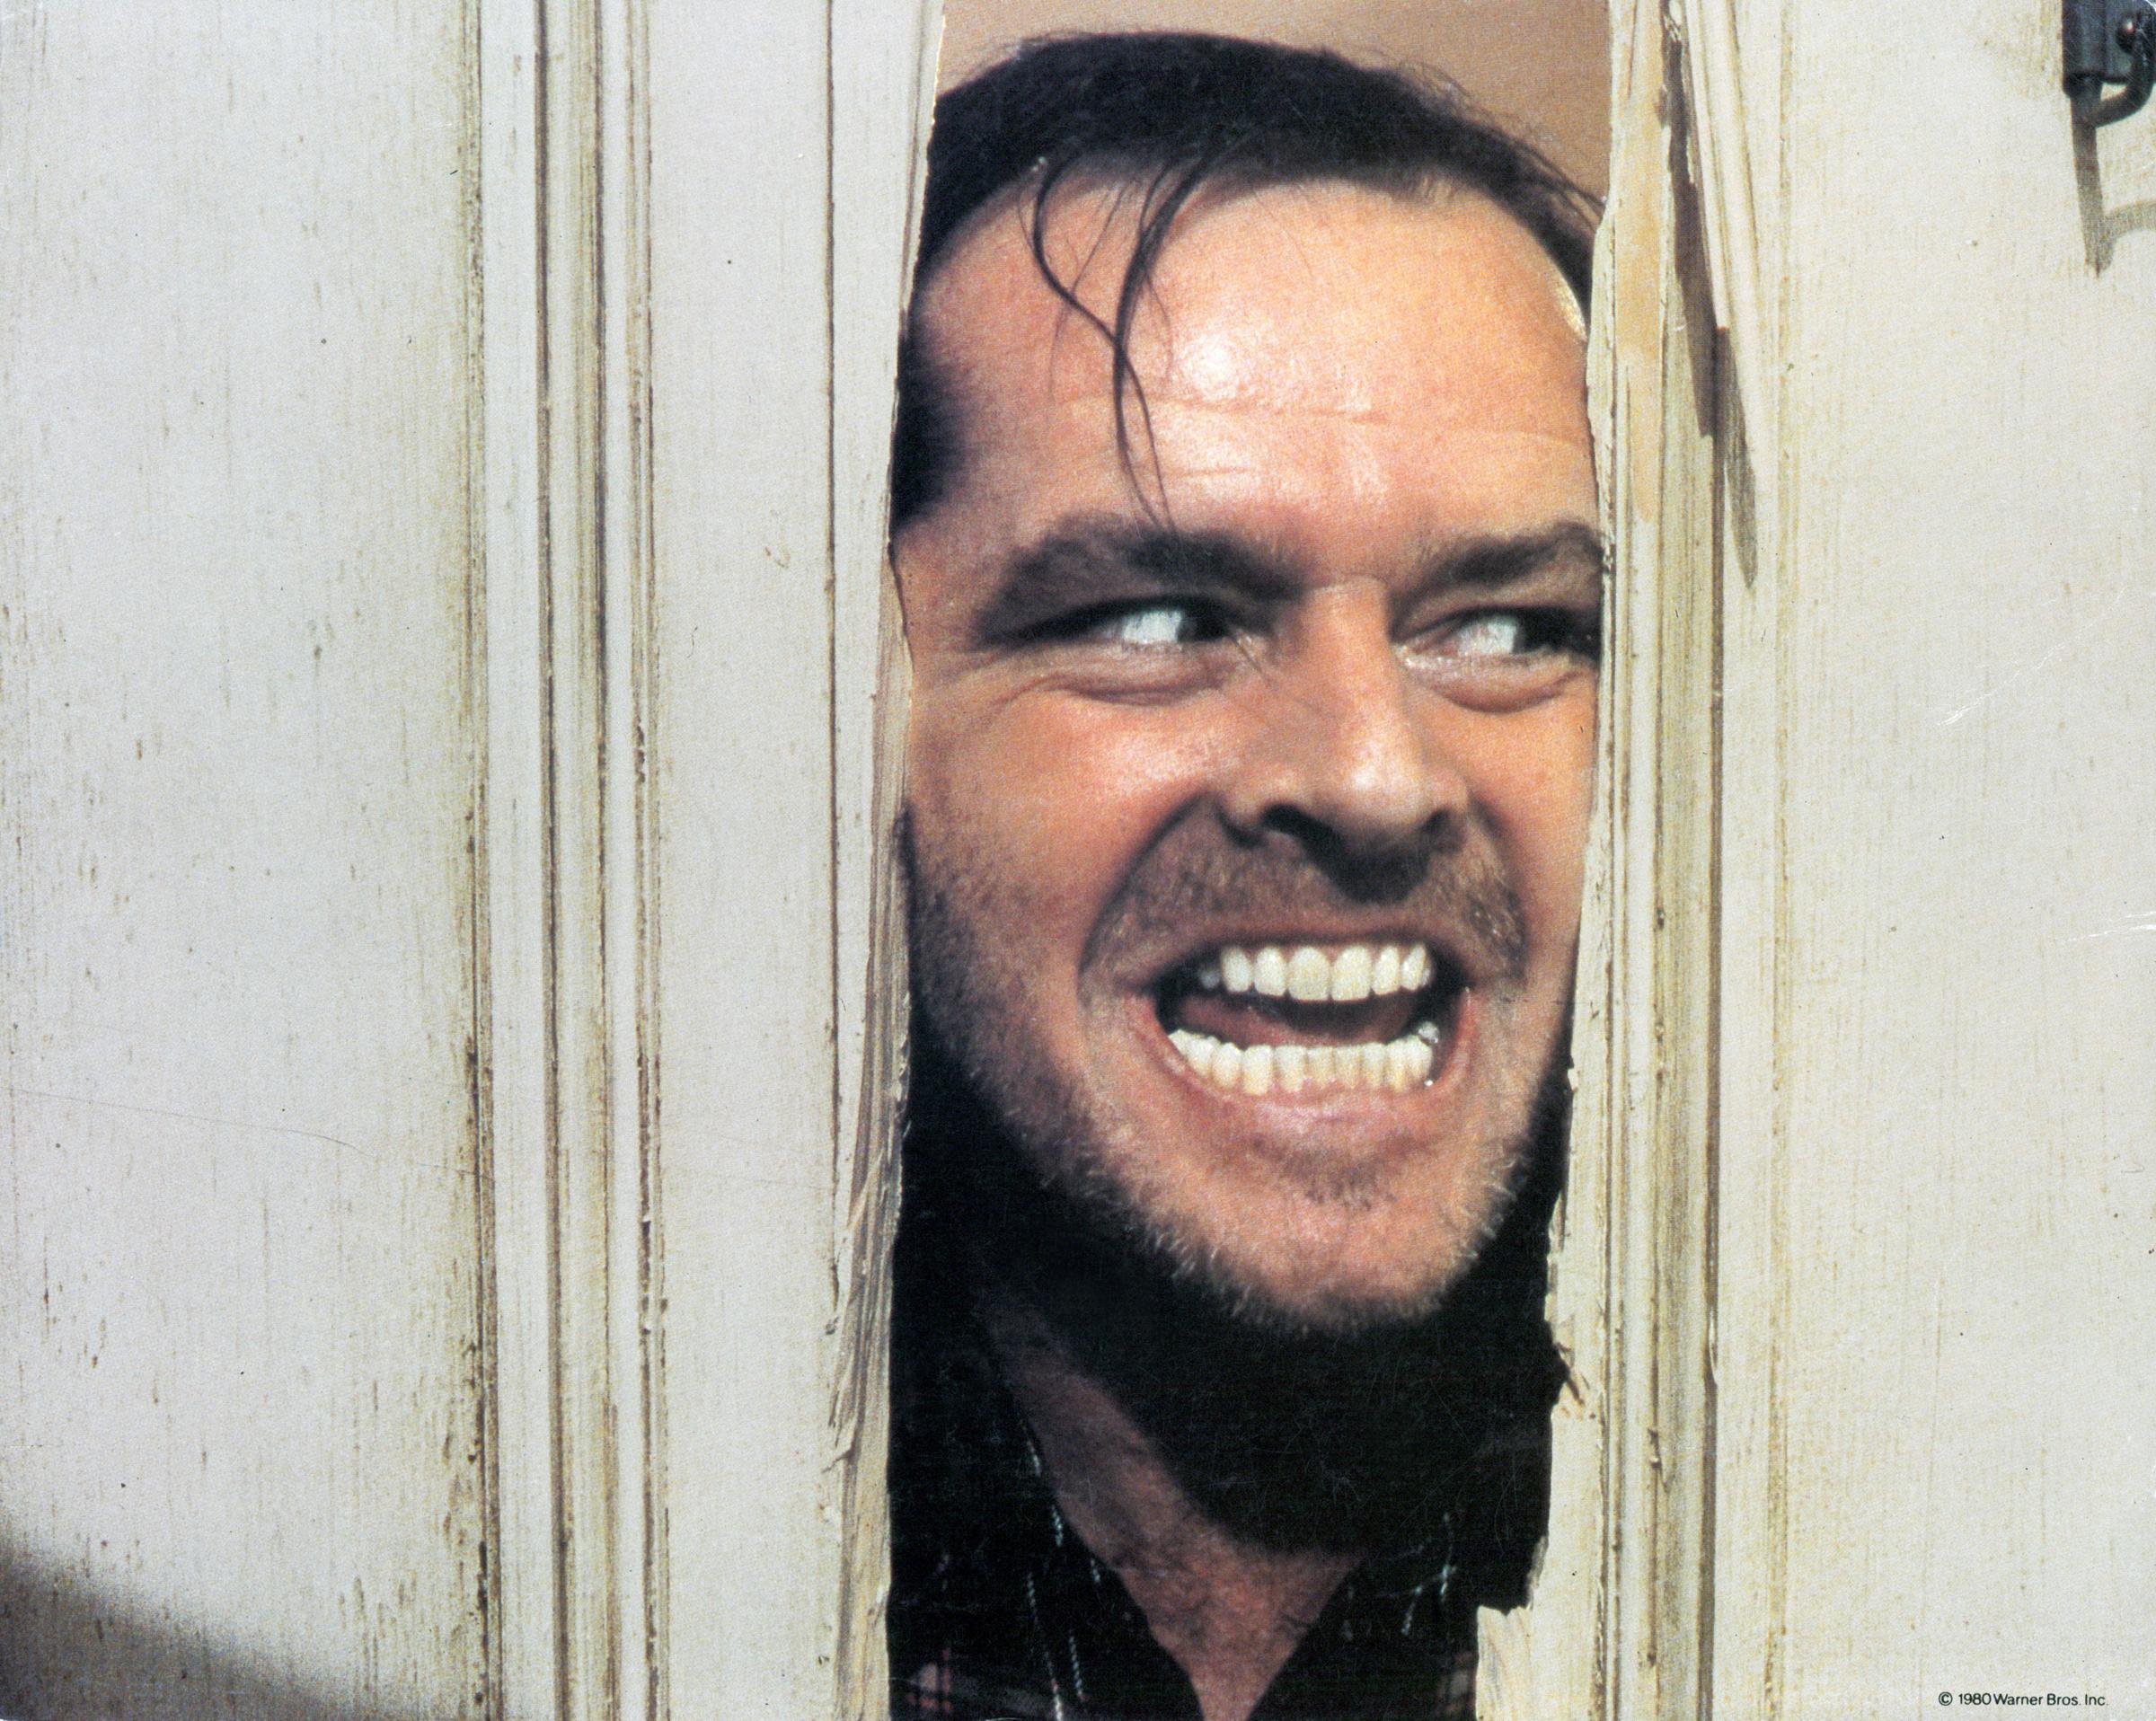 Jack Nicholson sur le plateau de tournage de "The Shining", 1980 | Source : Getty Images